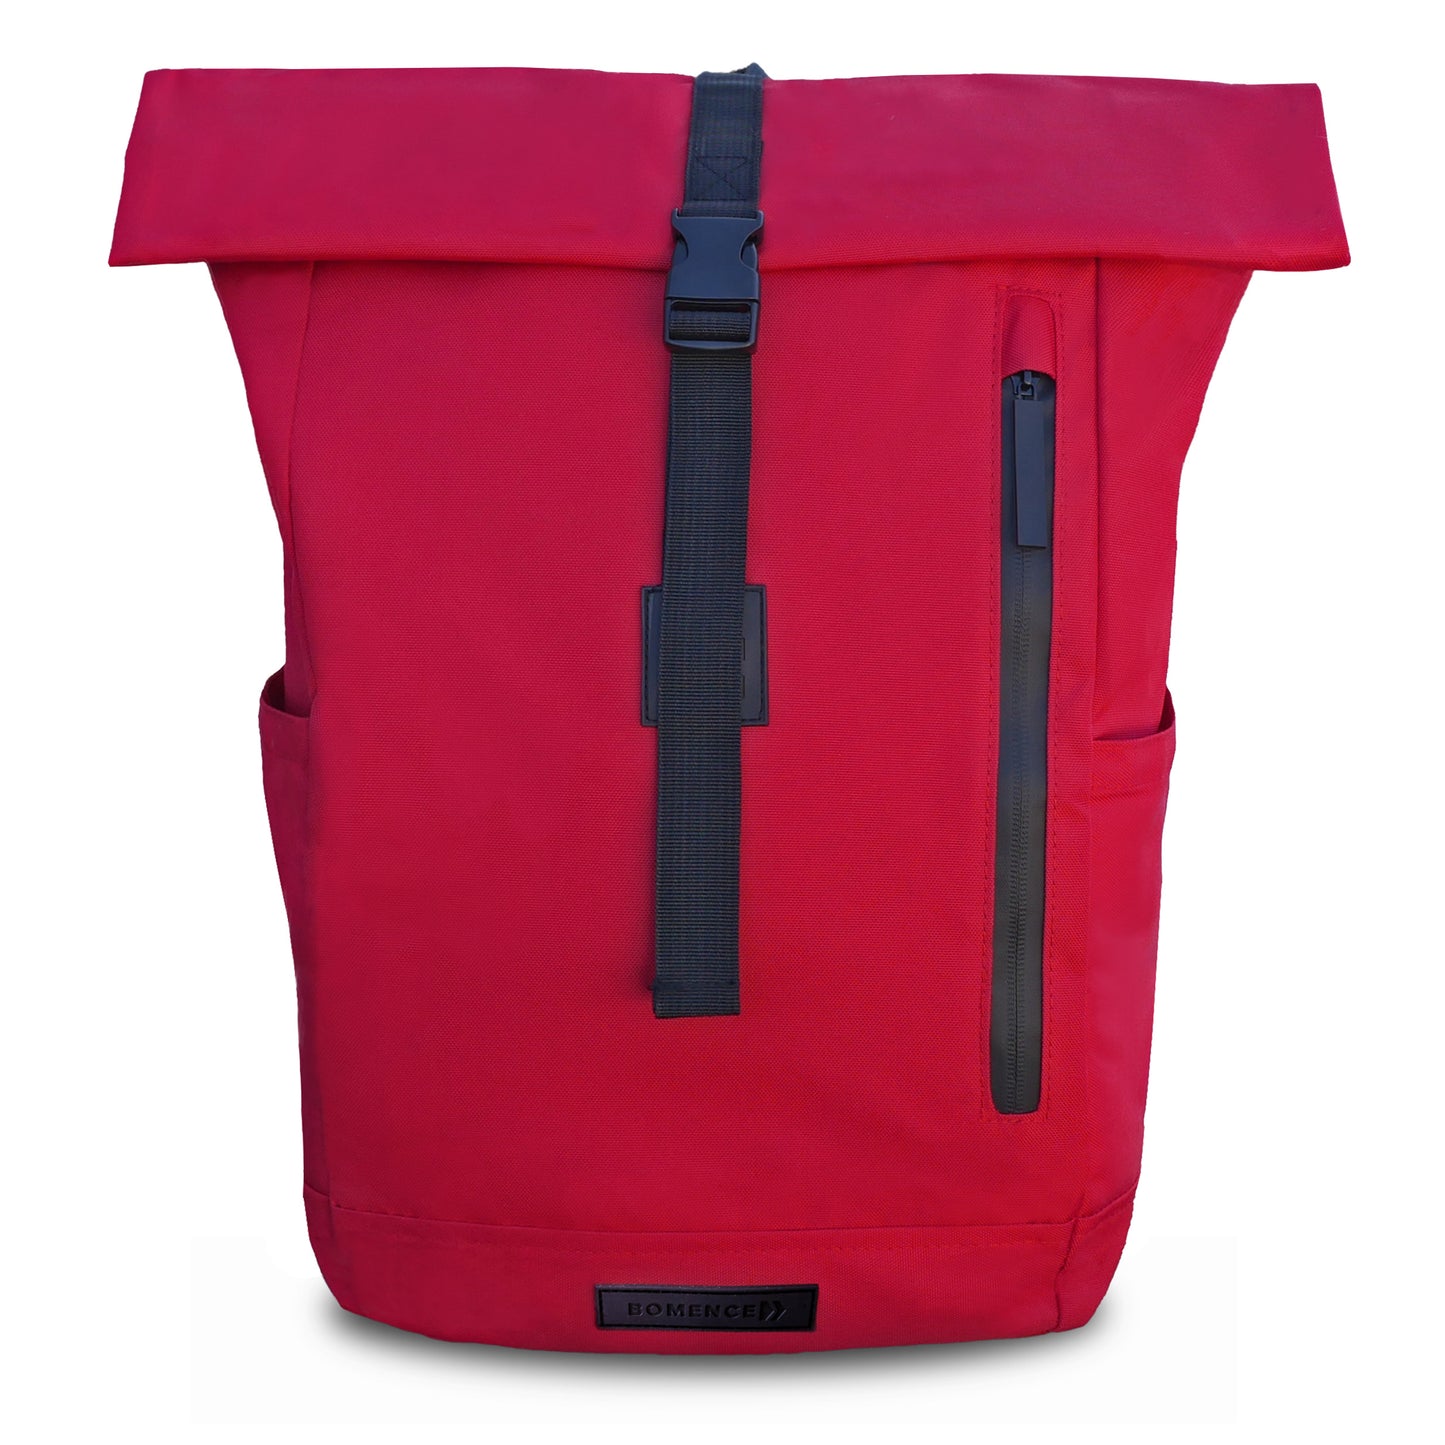 Recycelter Rolltop-Rucksack für Frauen in der Variante Rot.